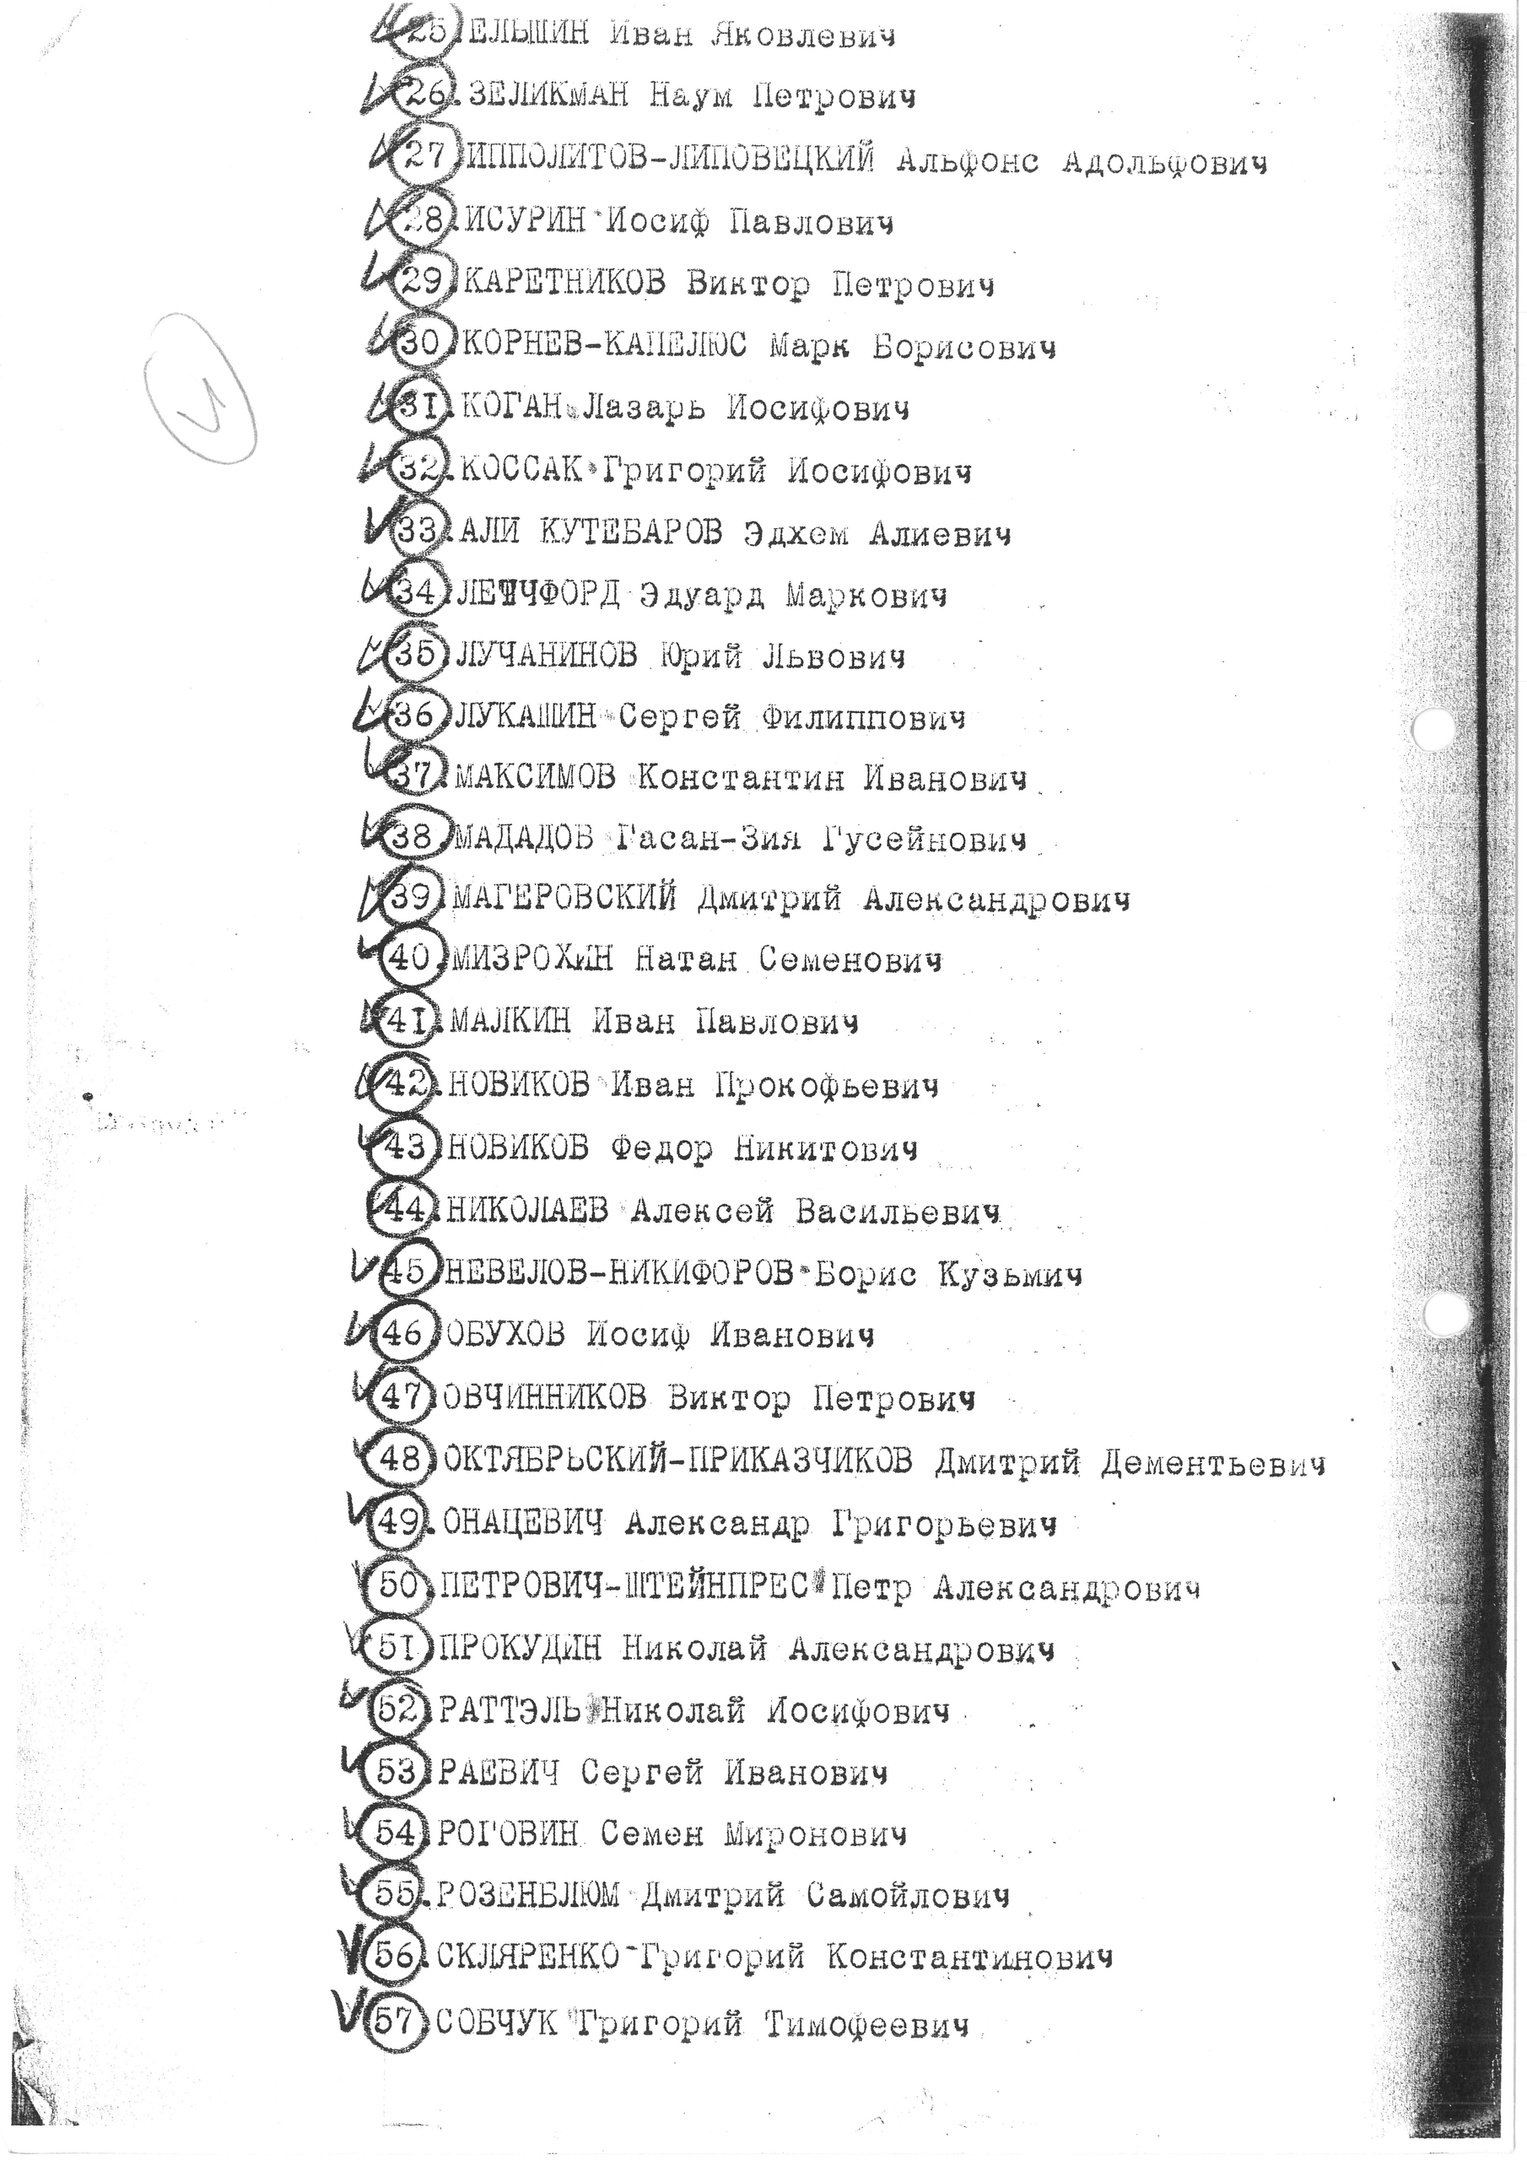 Предписание М. Г. Романычева к расстрелу В. М. Блохину от 2.3.1939 г.